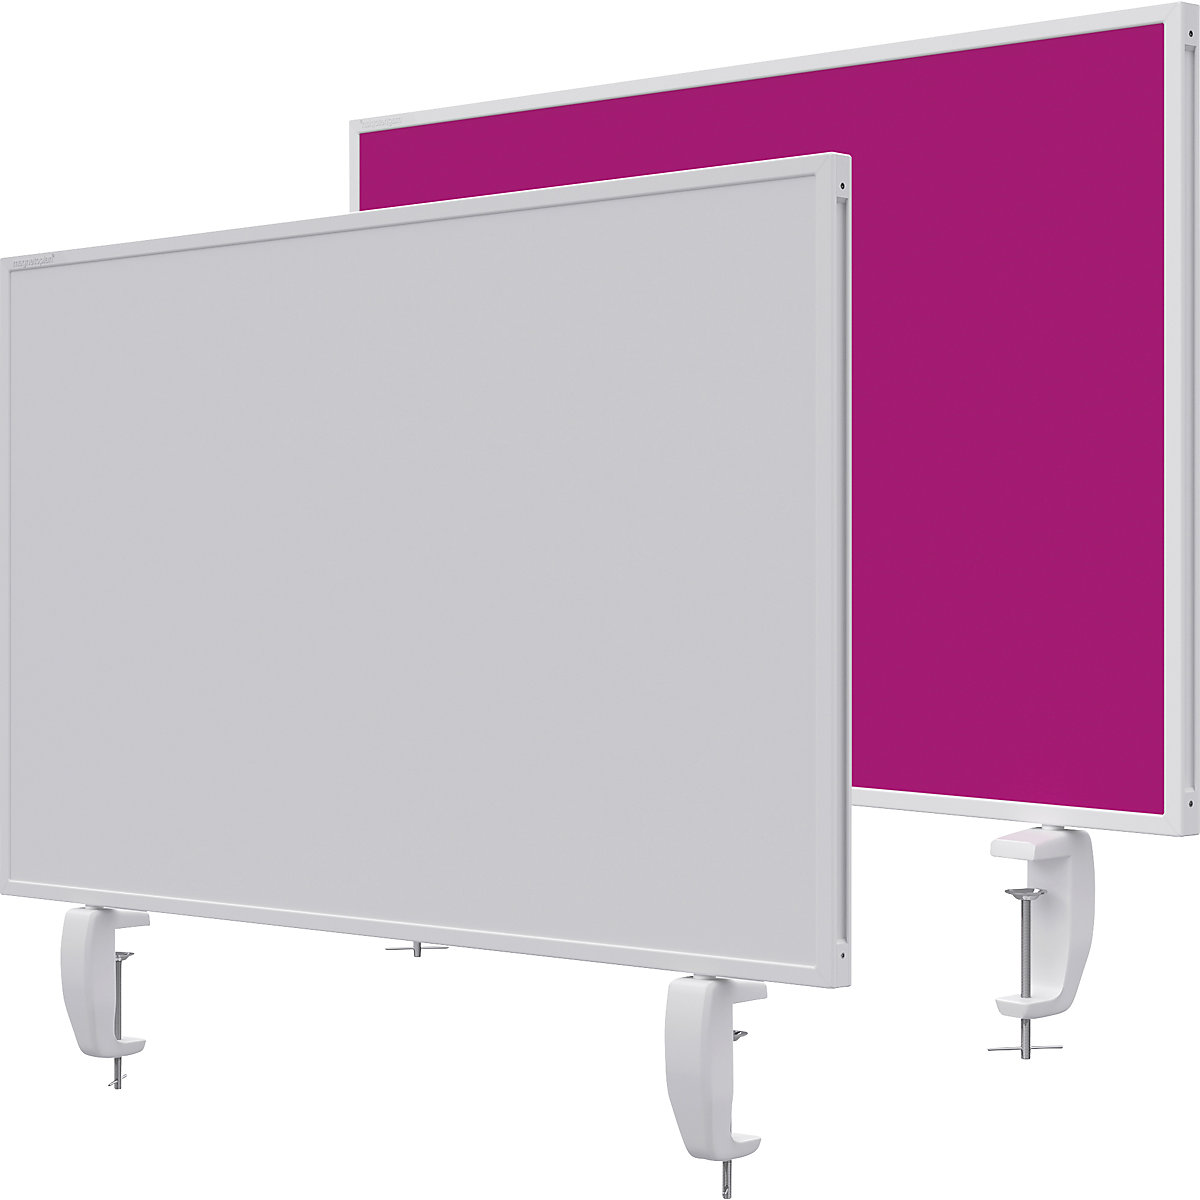 Tischtrennwand VarioPin magnetoplan, Whiteboard/Filz, Breite 800 mm, pink-19